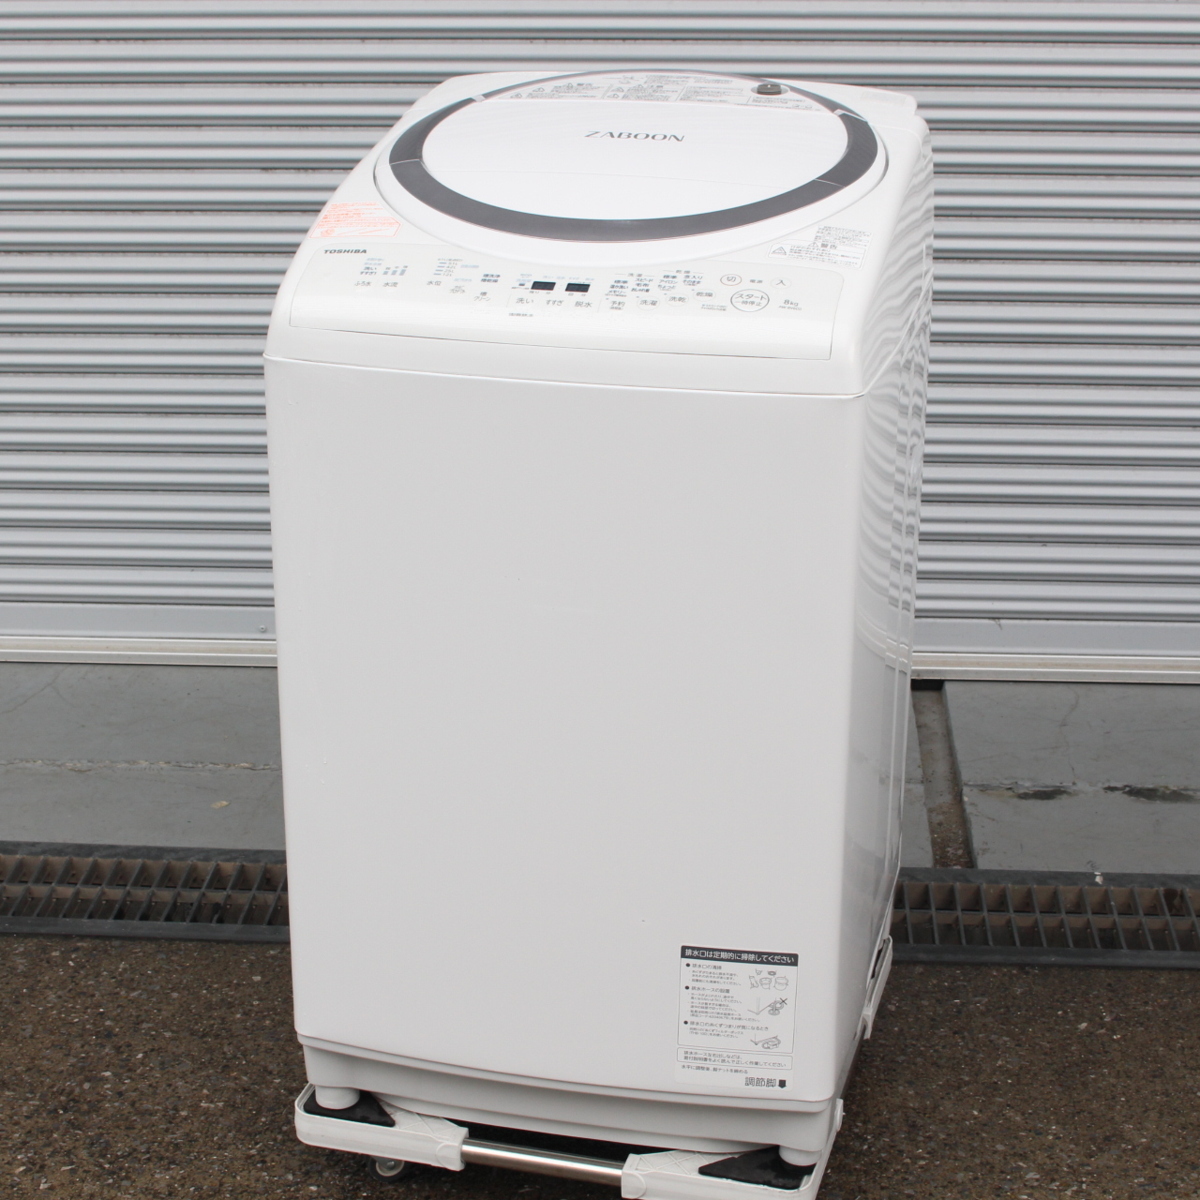 東京都中央区にて 東芝 洗濯機 AW-8V6 2018年製 を出張買取させて頂きました。